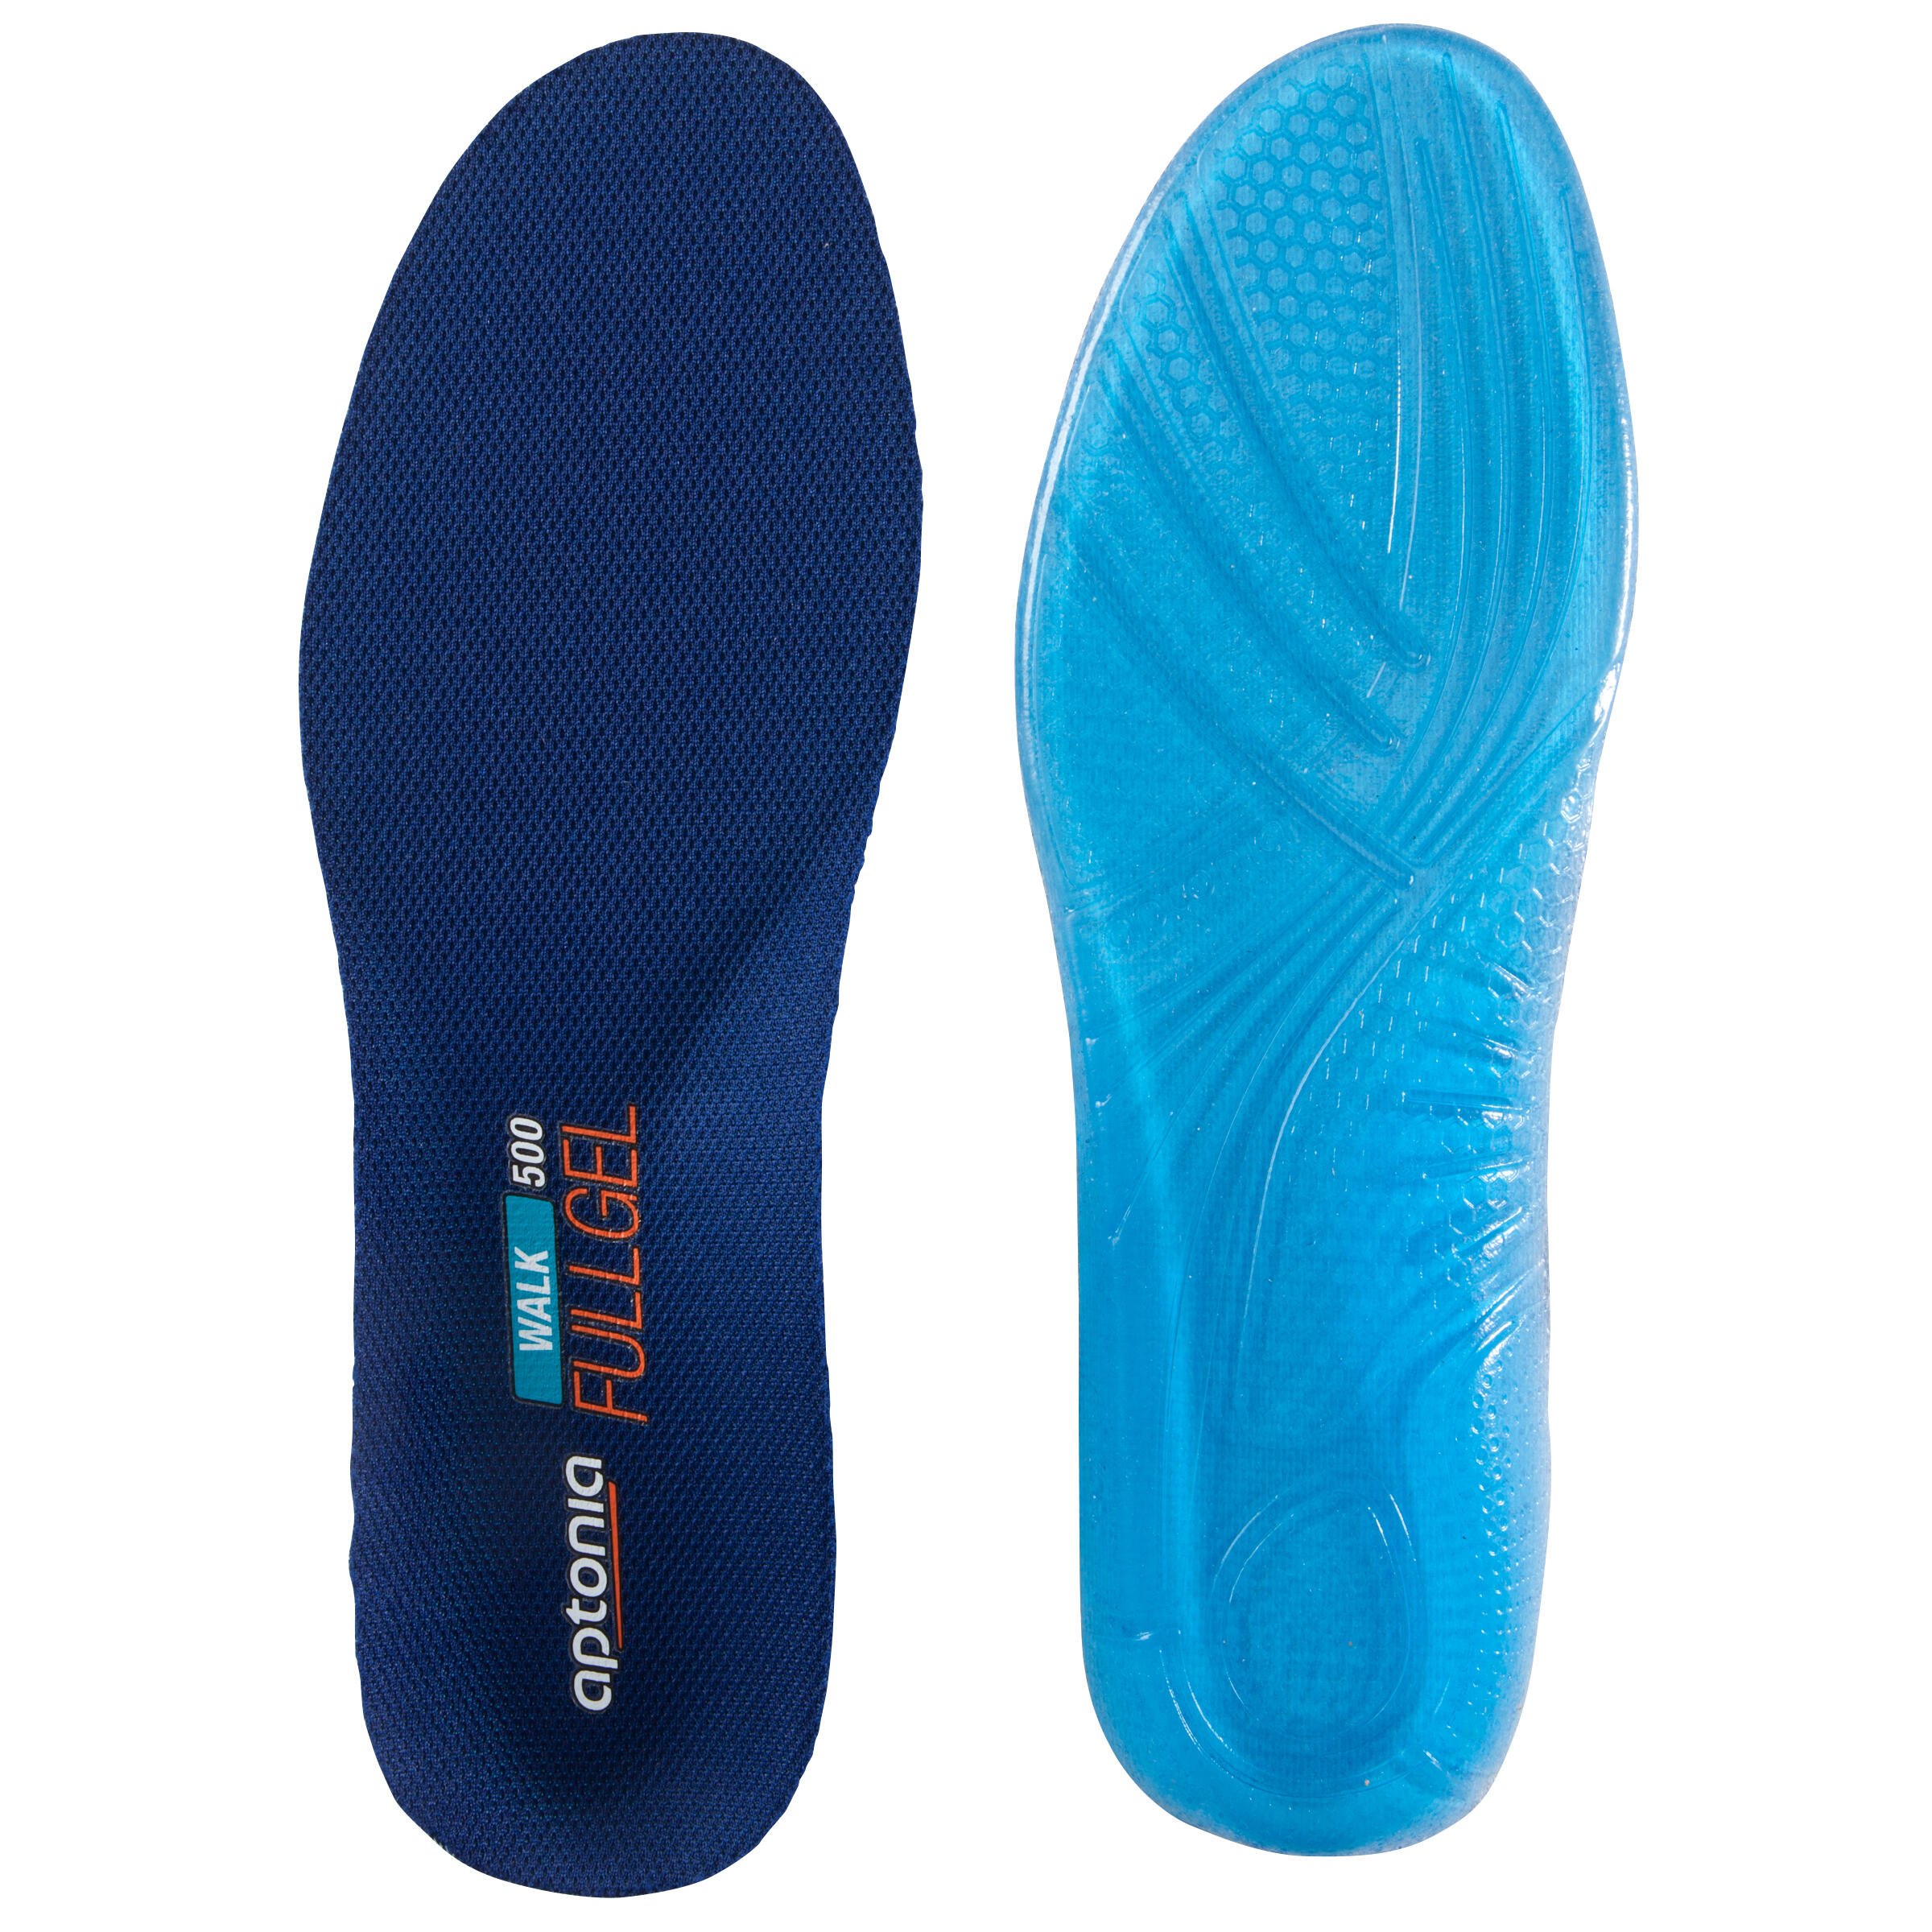 WALK 500 SOLE - BLUE APTONIA - Decathlon